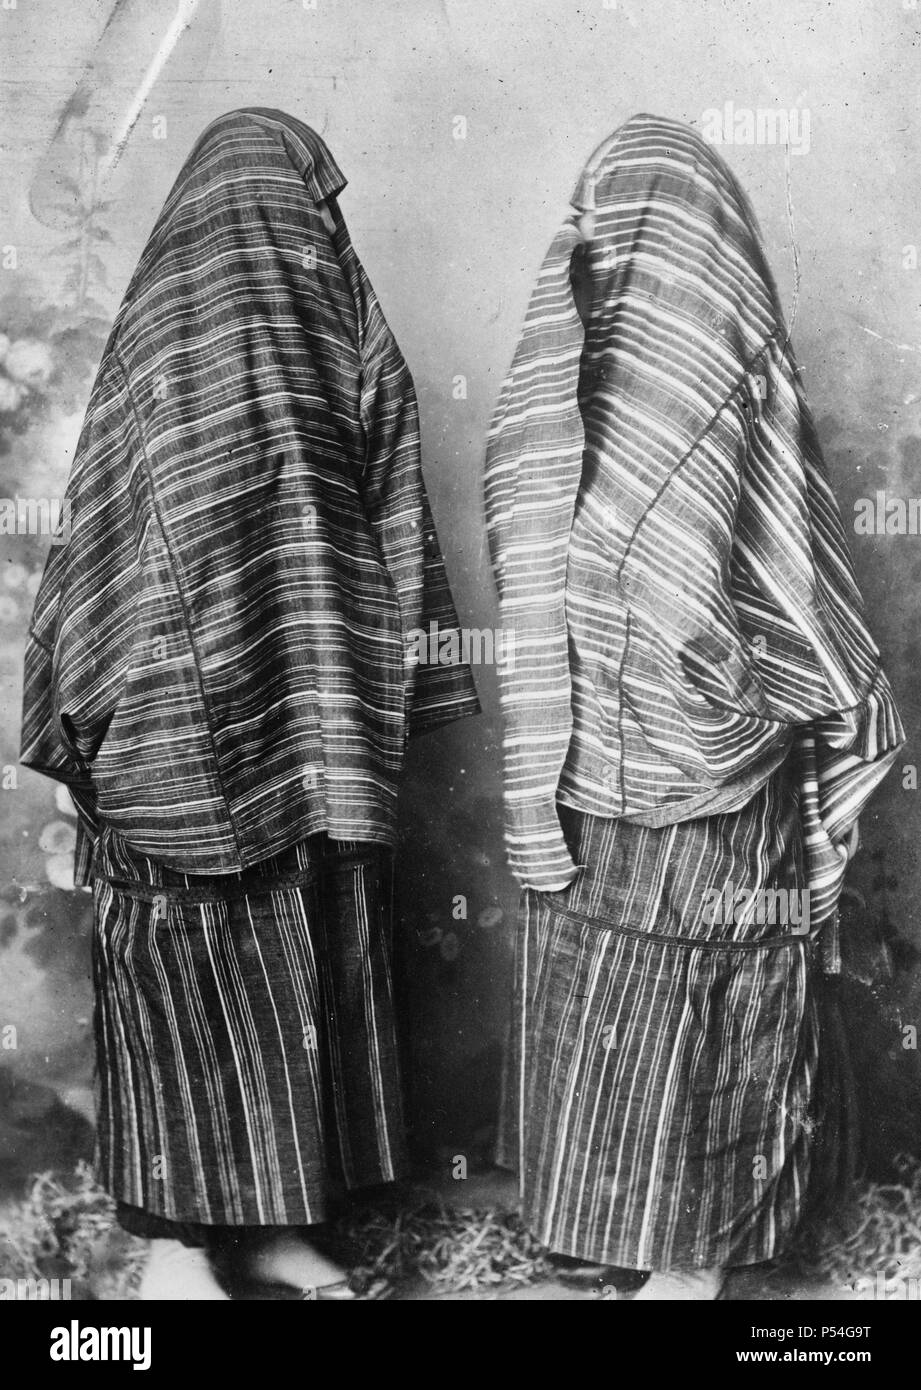 Scutari, ALBANIE. Les femmes en costume d'ordinaire pour la rue de rouge et d'un tissu blanc. Les coutures sont joints avec minute crocheté et travaillé dans le rouge ou combinaisons de couleurs. Sous la jupe tissu qui est liée comme un tablier autour de la taille sont usées volumineux sur le pantalon noir de style turc tissu brillant. Août 1921 Banque D'Images